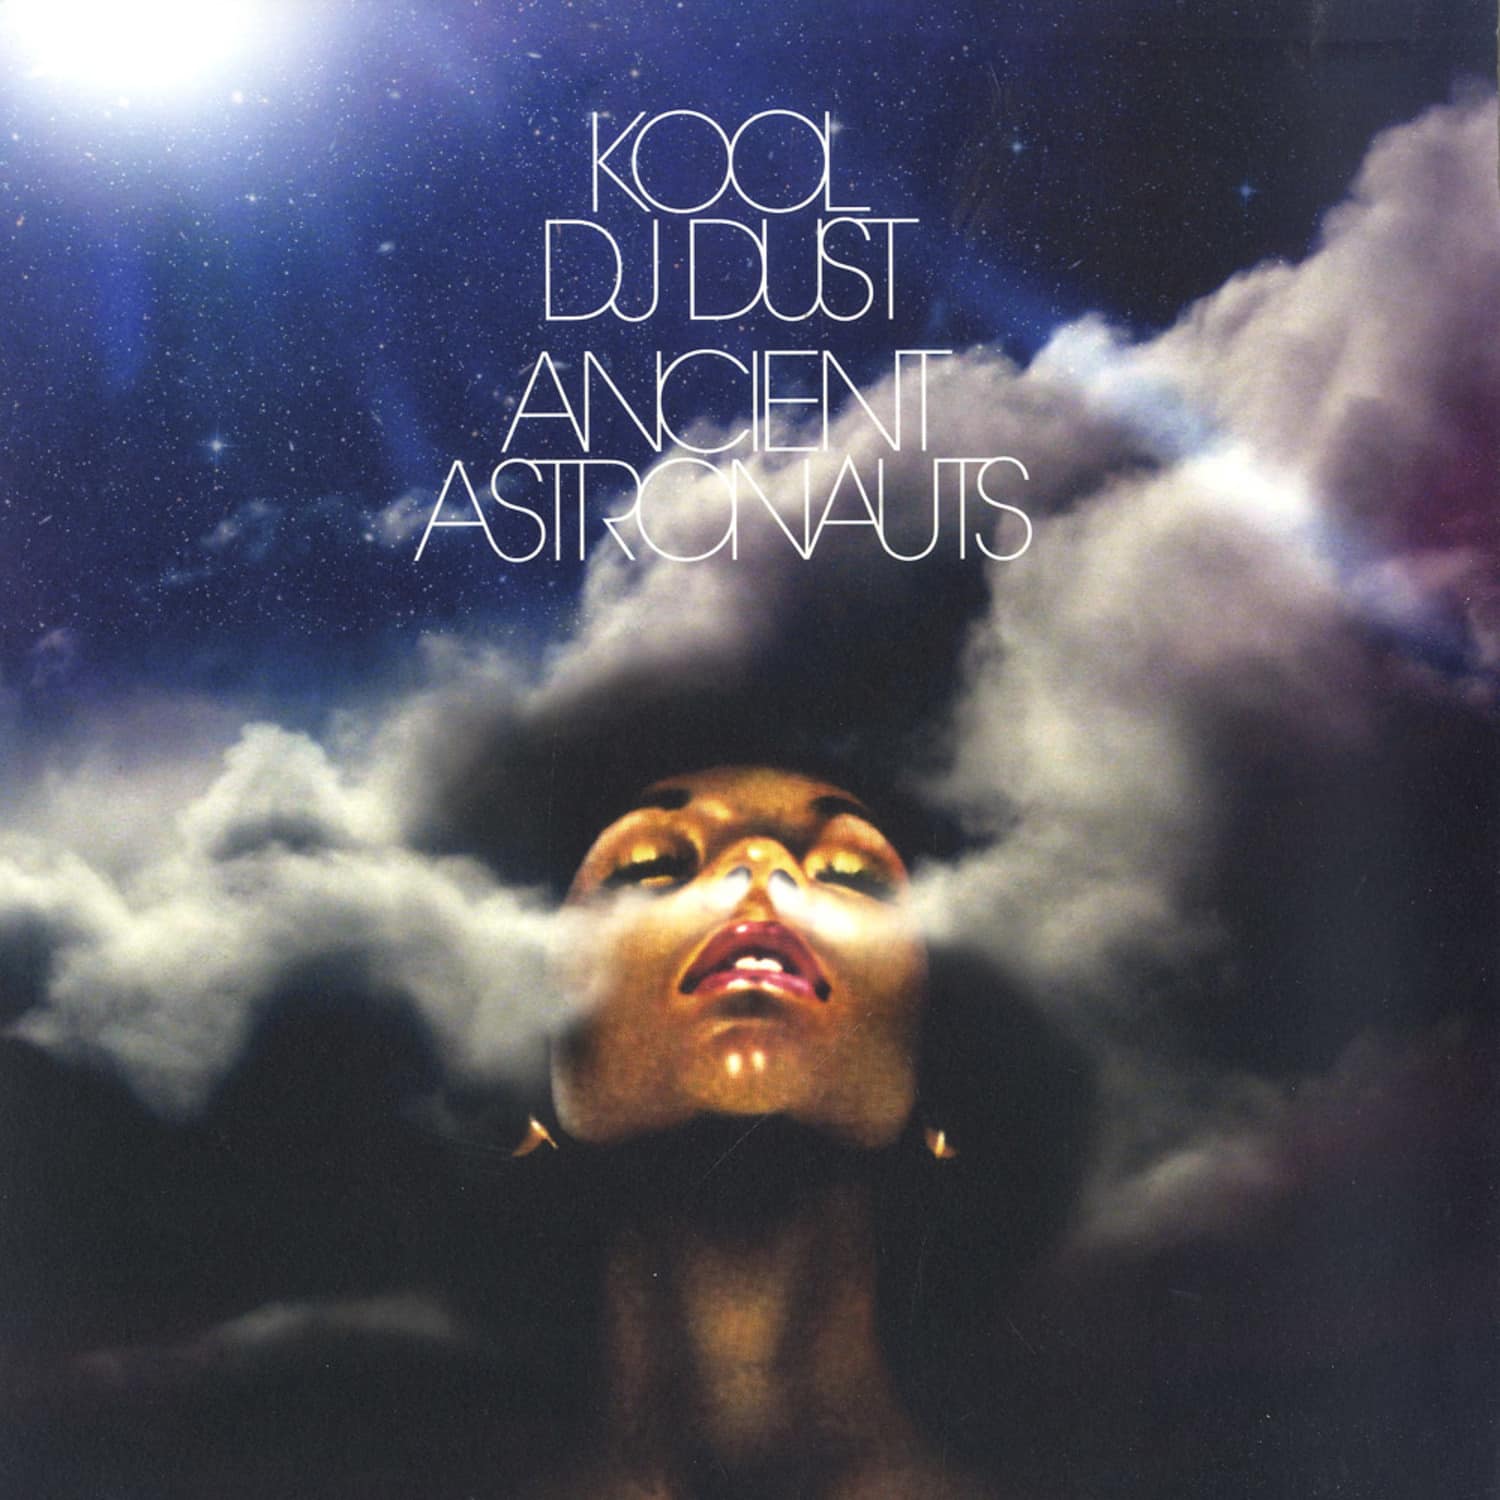 Kool DJ Dust - ANCIENT ASTRONAUTS